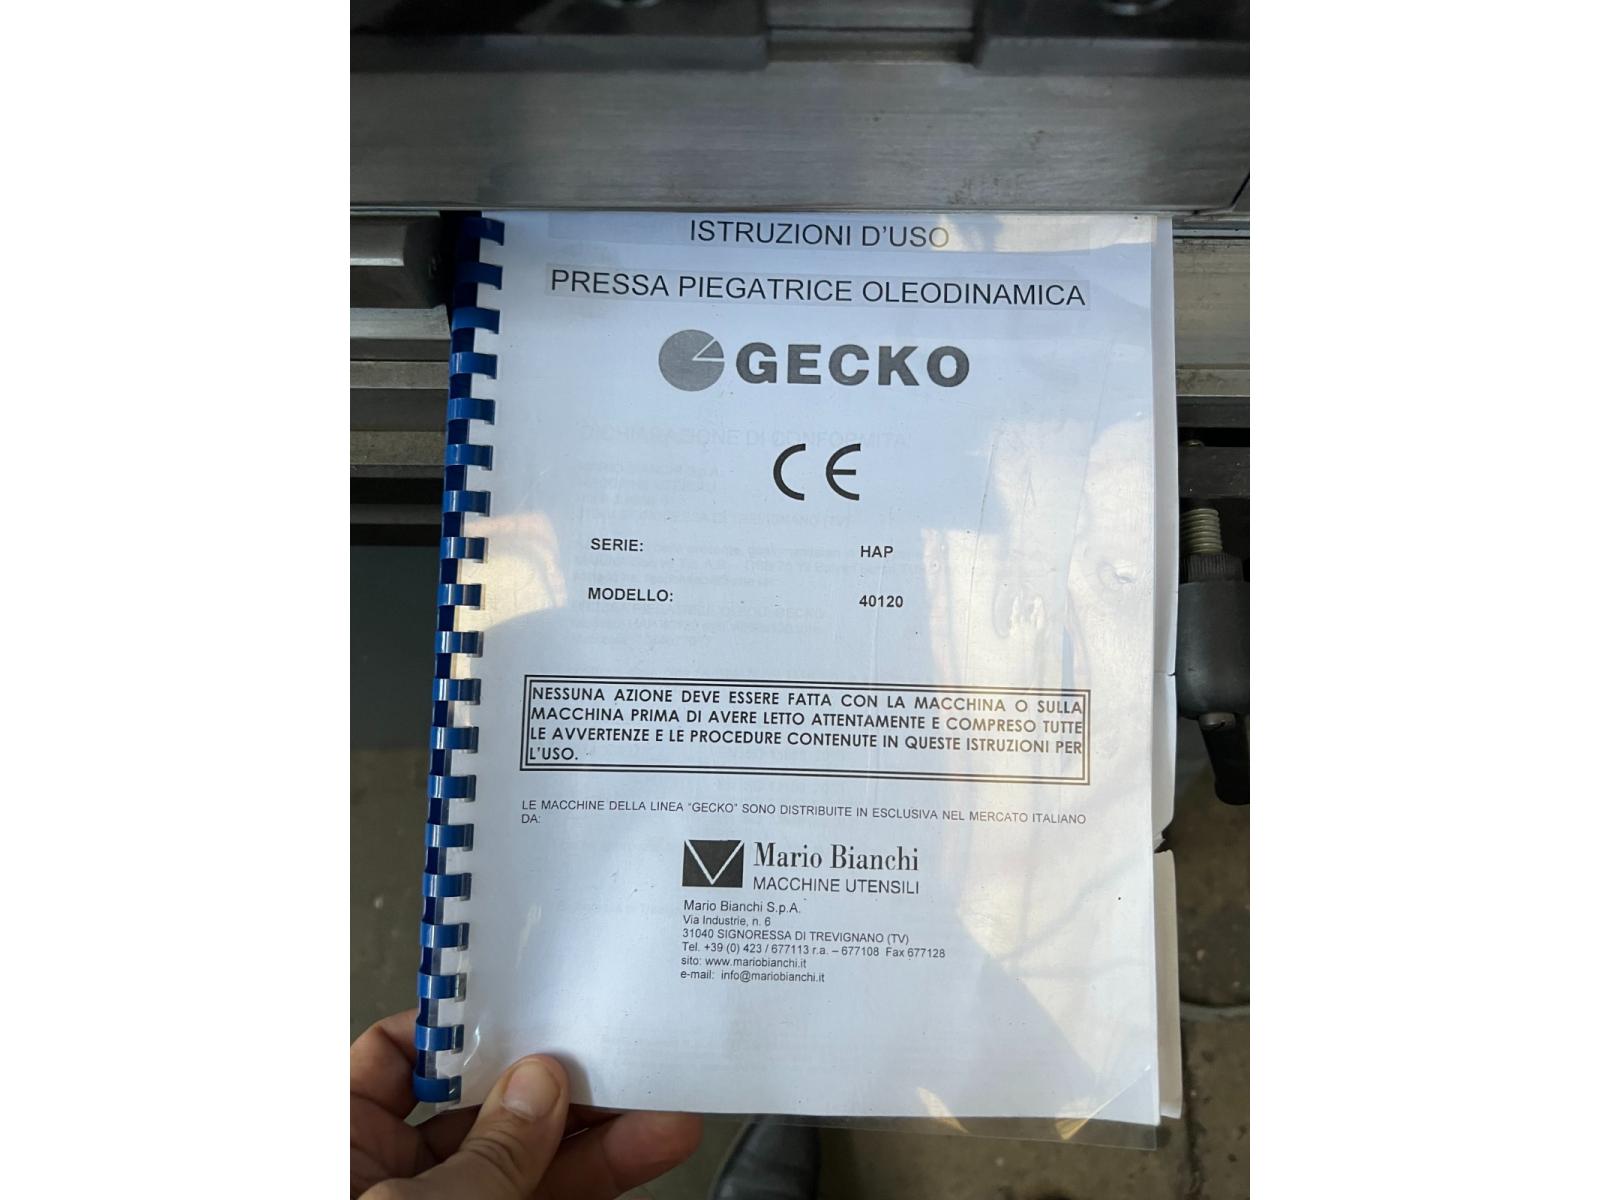 Press brake GECKO Cnc Mod hap 40120 Anno 2020